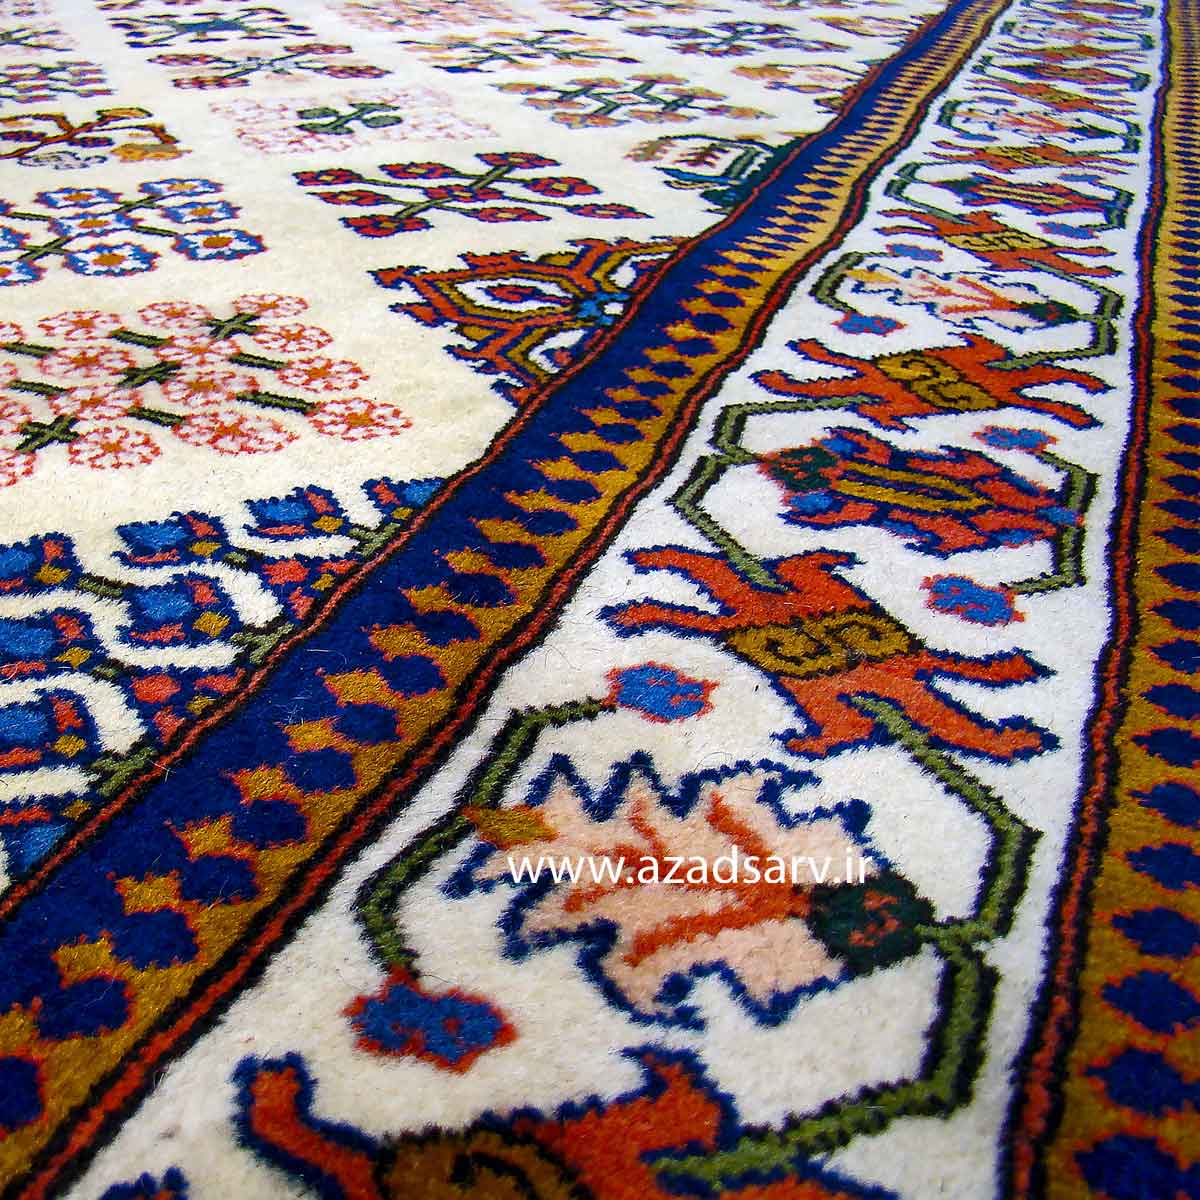 فرش دستباف هفت متری آزادسرو نقشه جوشقان azadsarv carpet